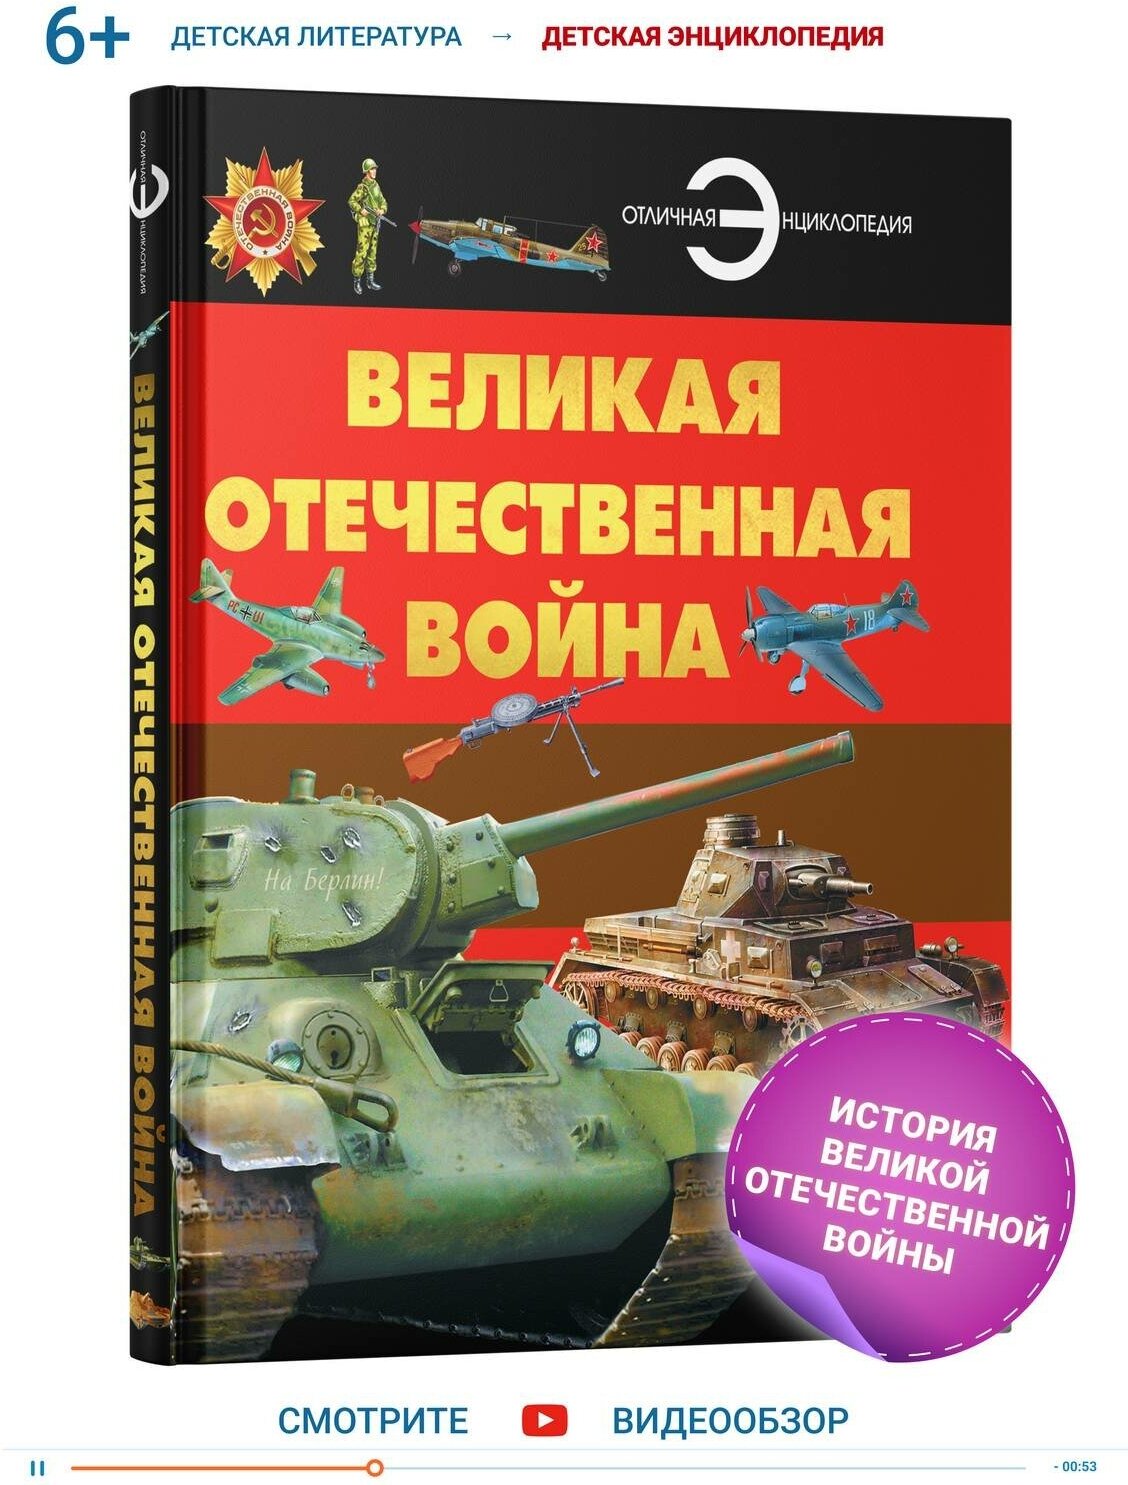 Книга, энциклопедия для детей, школьников Великая Отечественная война, военное дело